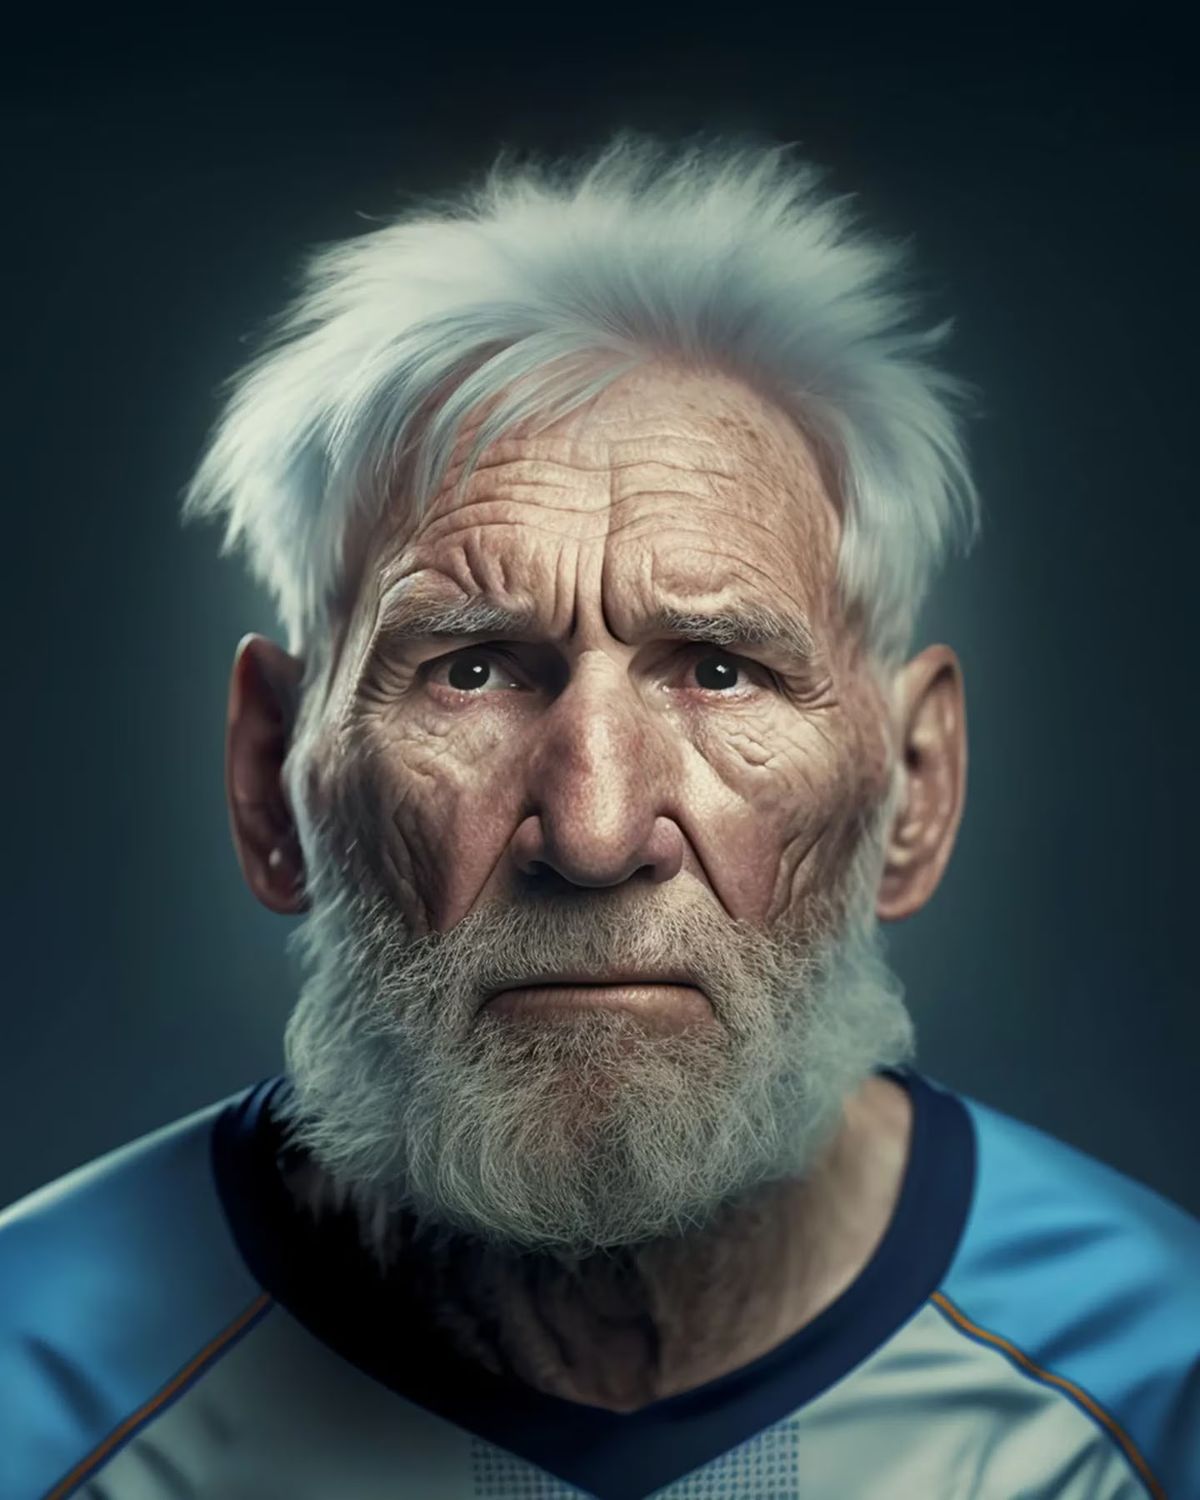 La inteligencia artificial develó cómo envejecerán los jugadores y la imagen de Messi y Di María sorprendió a todos